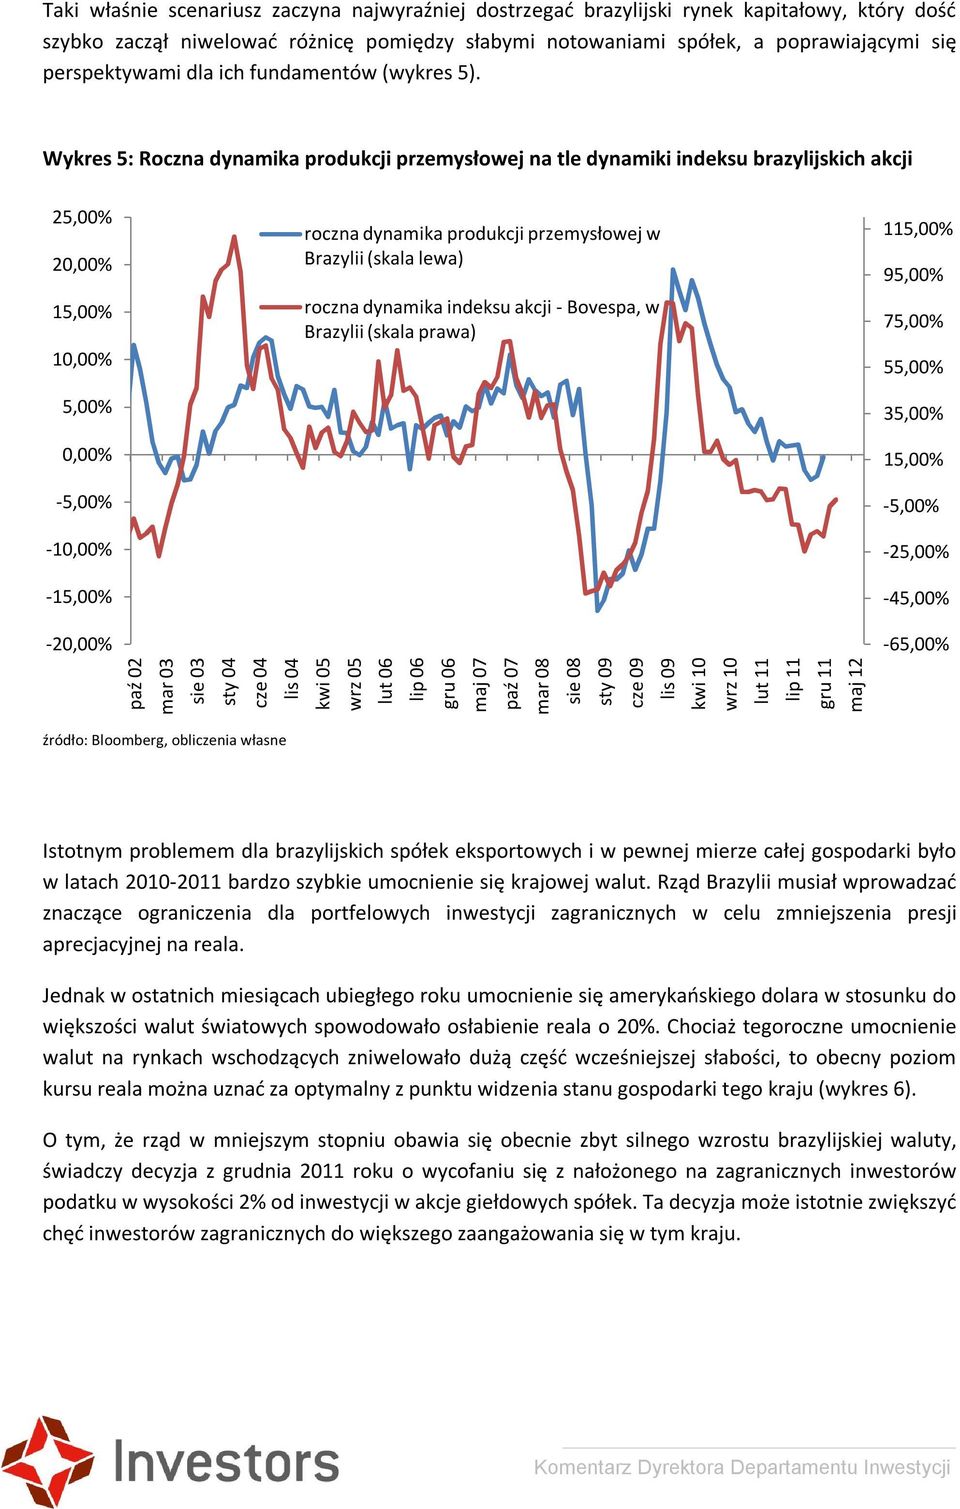 Wykres 5: Roczna dynamika produkcji przemysłowej na tle dynamiki indeksu brazylijskich akcji 25,00% 20,00% 15,00% 10,00% 5,00% 0,00% -5,00% -10,00% -15,00% roczna dynamika produkcji przemysłowej w